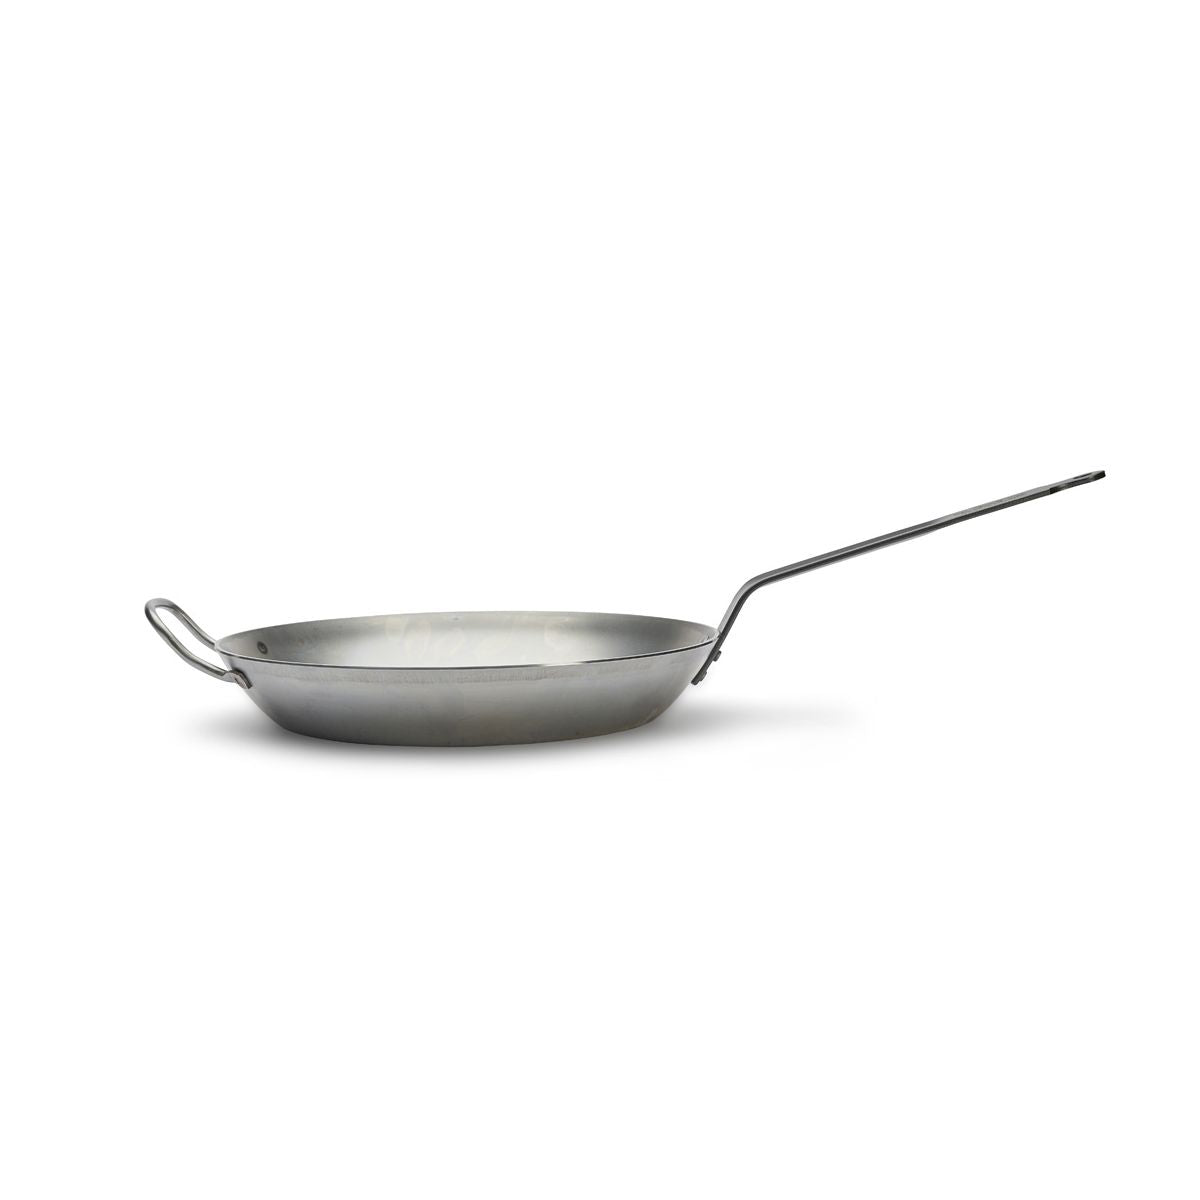 De Buyer Carbone Plus frying pan, flat handle